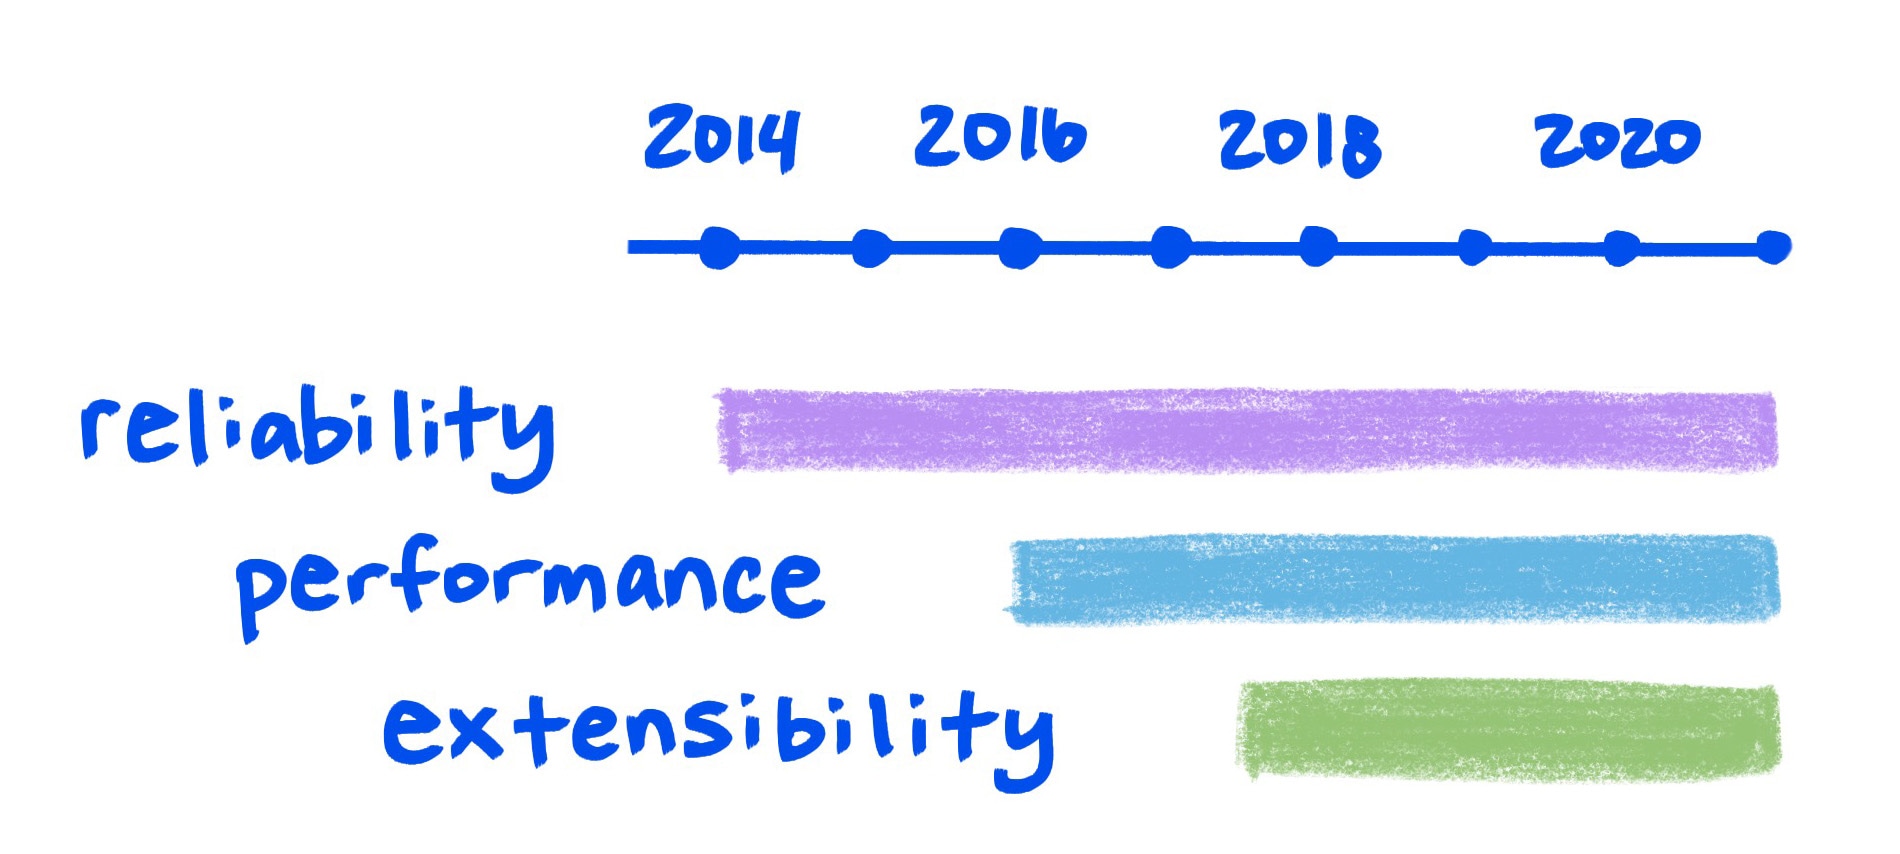 Grafik sketsa menunjukkan peningkatan keandalan, performa, dan ekstensibilitas dari waktu ke waktu